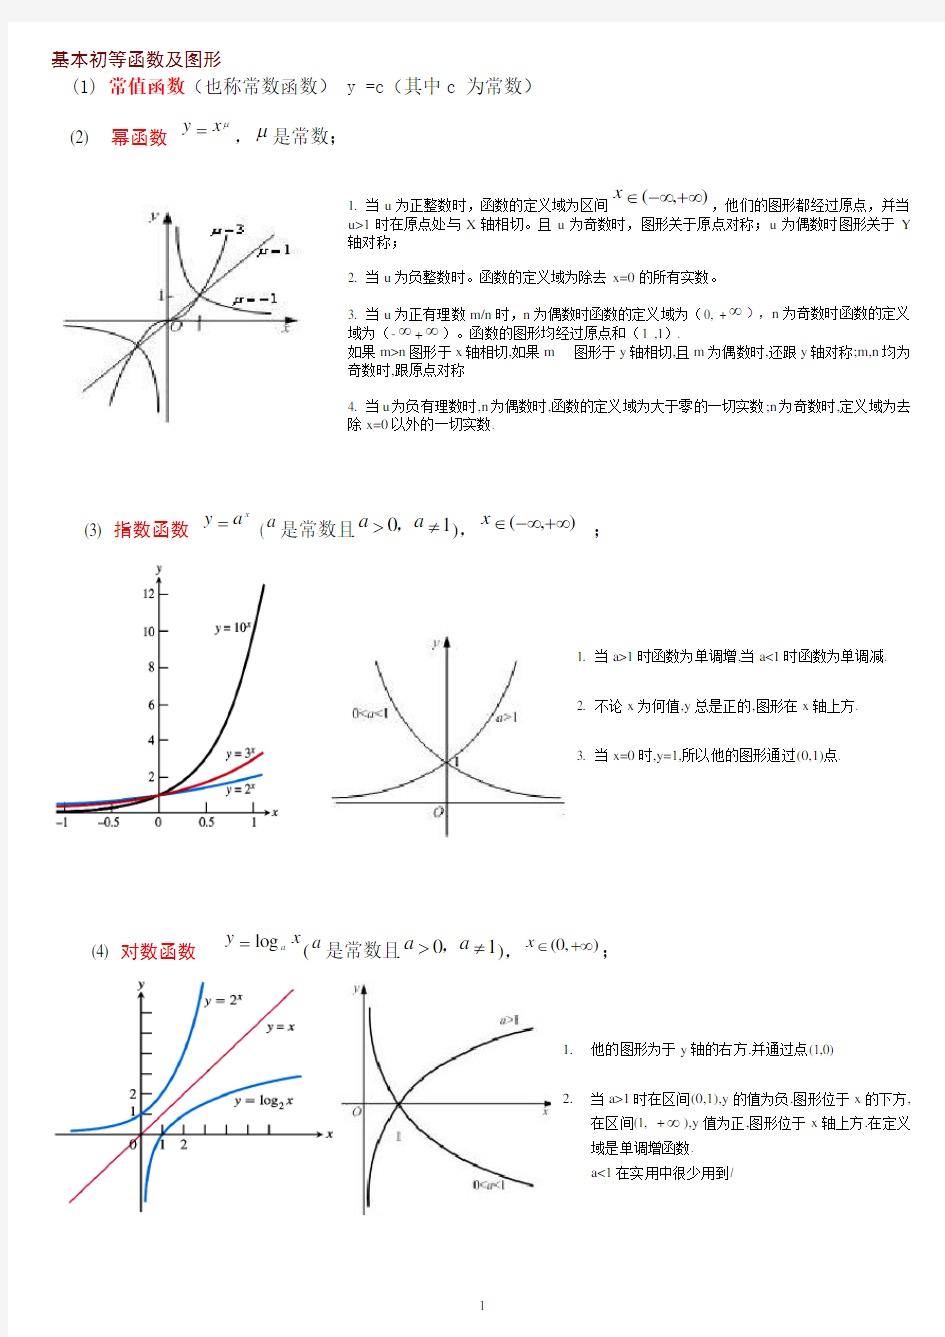 6类基本初等函数的图形及性质(考研数学基础)_完美版